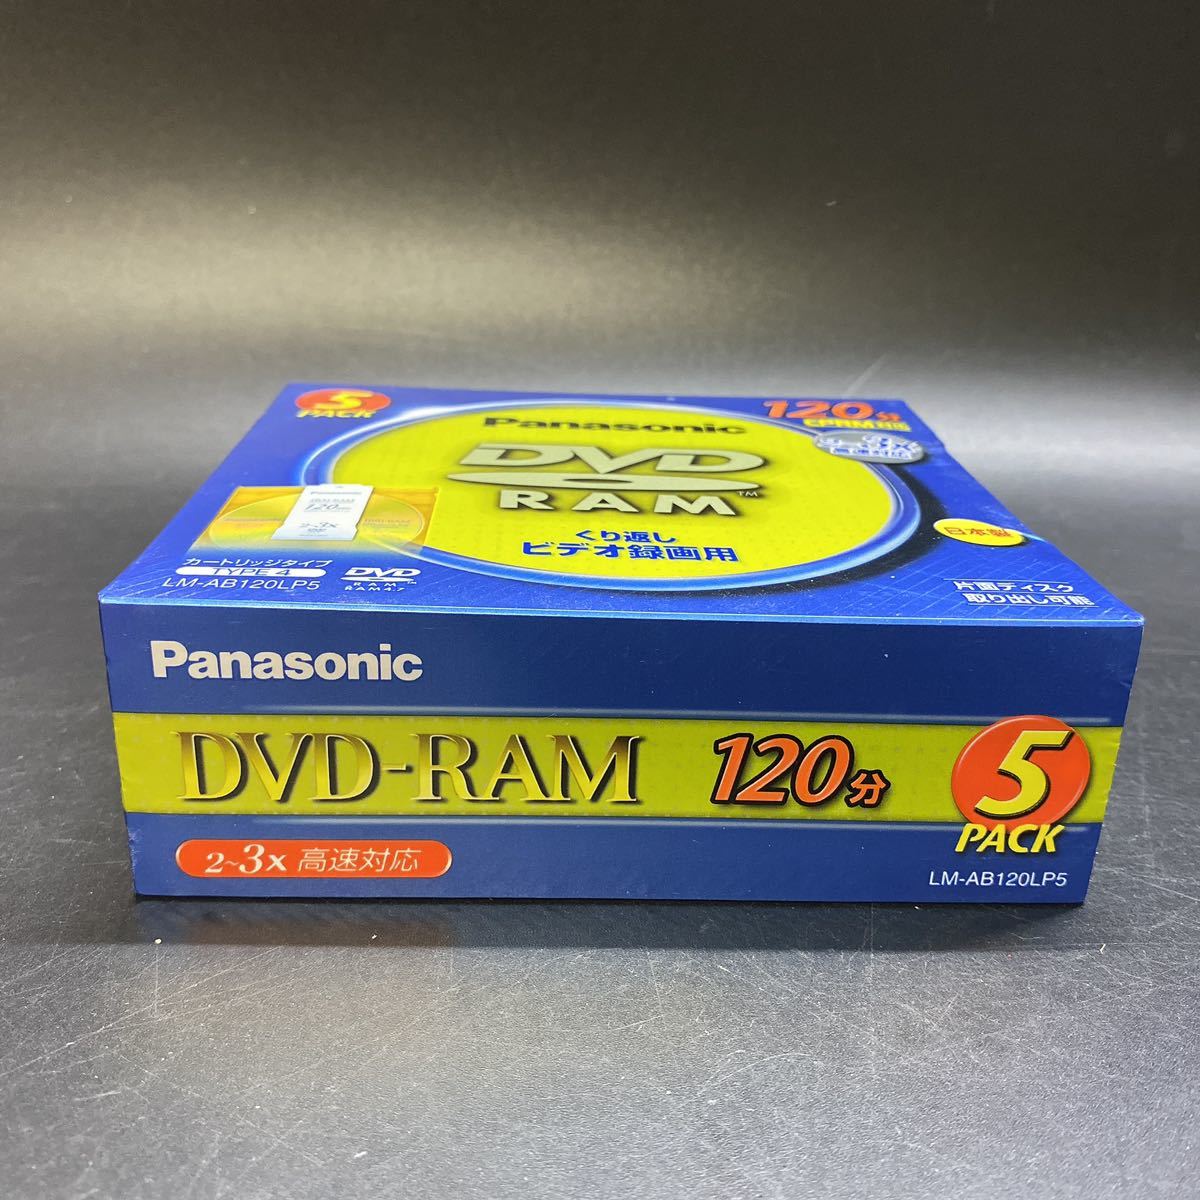 未開封 カートリッジ式 DVD-RAMメディア パナソニック LM-AB120LP5 CPRM対応120分 Panasonic 新品_画像6